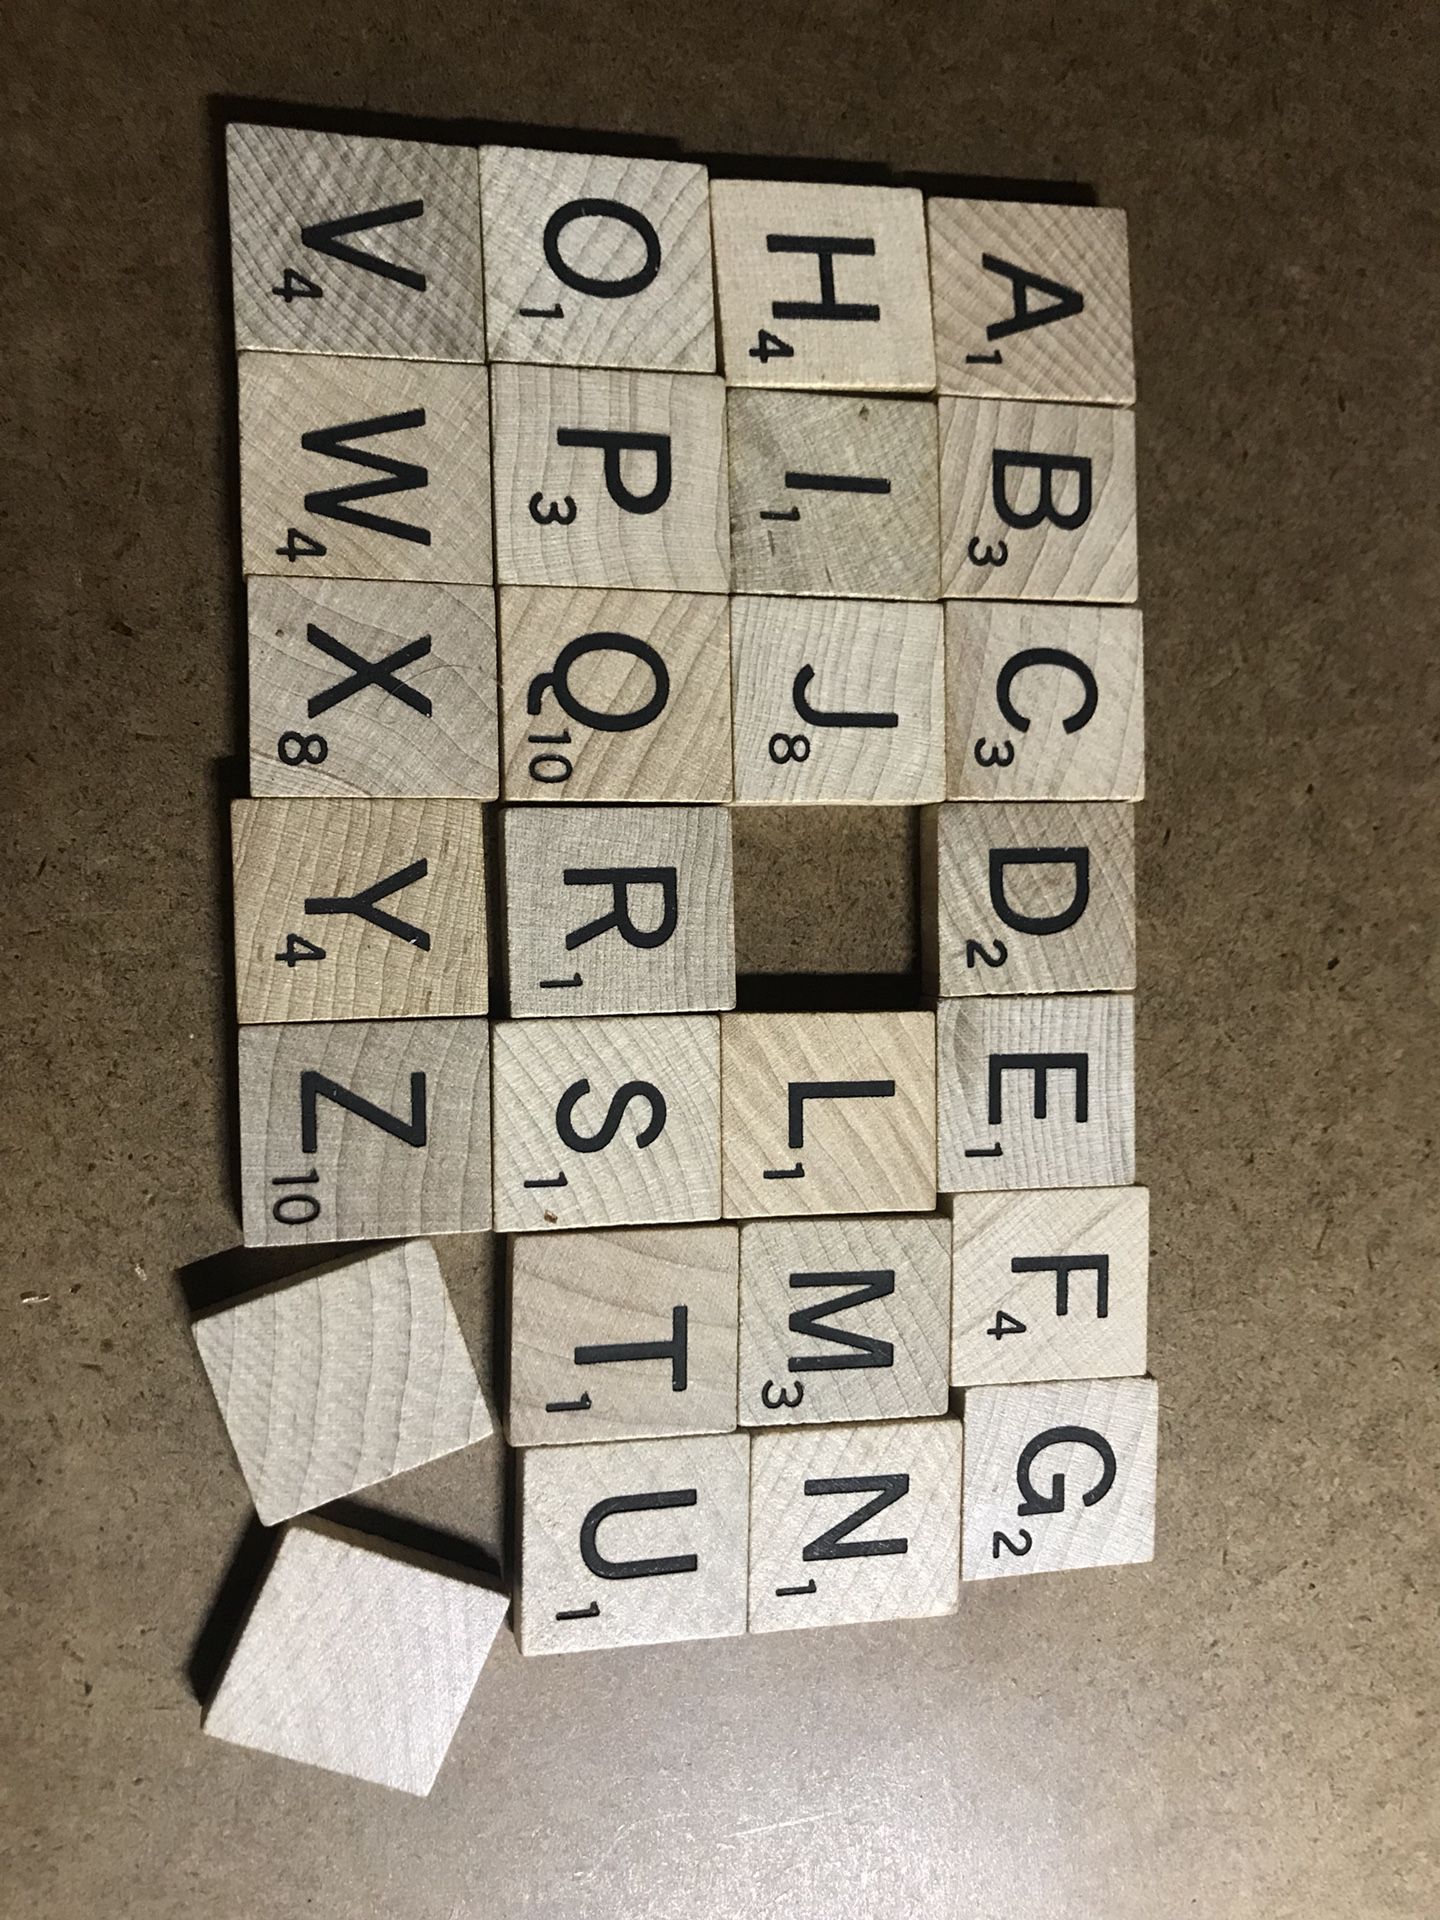 Scrabble puzzle pieces